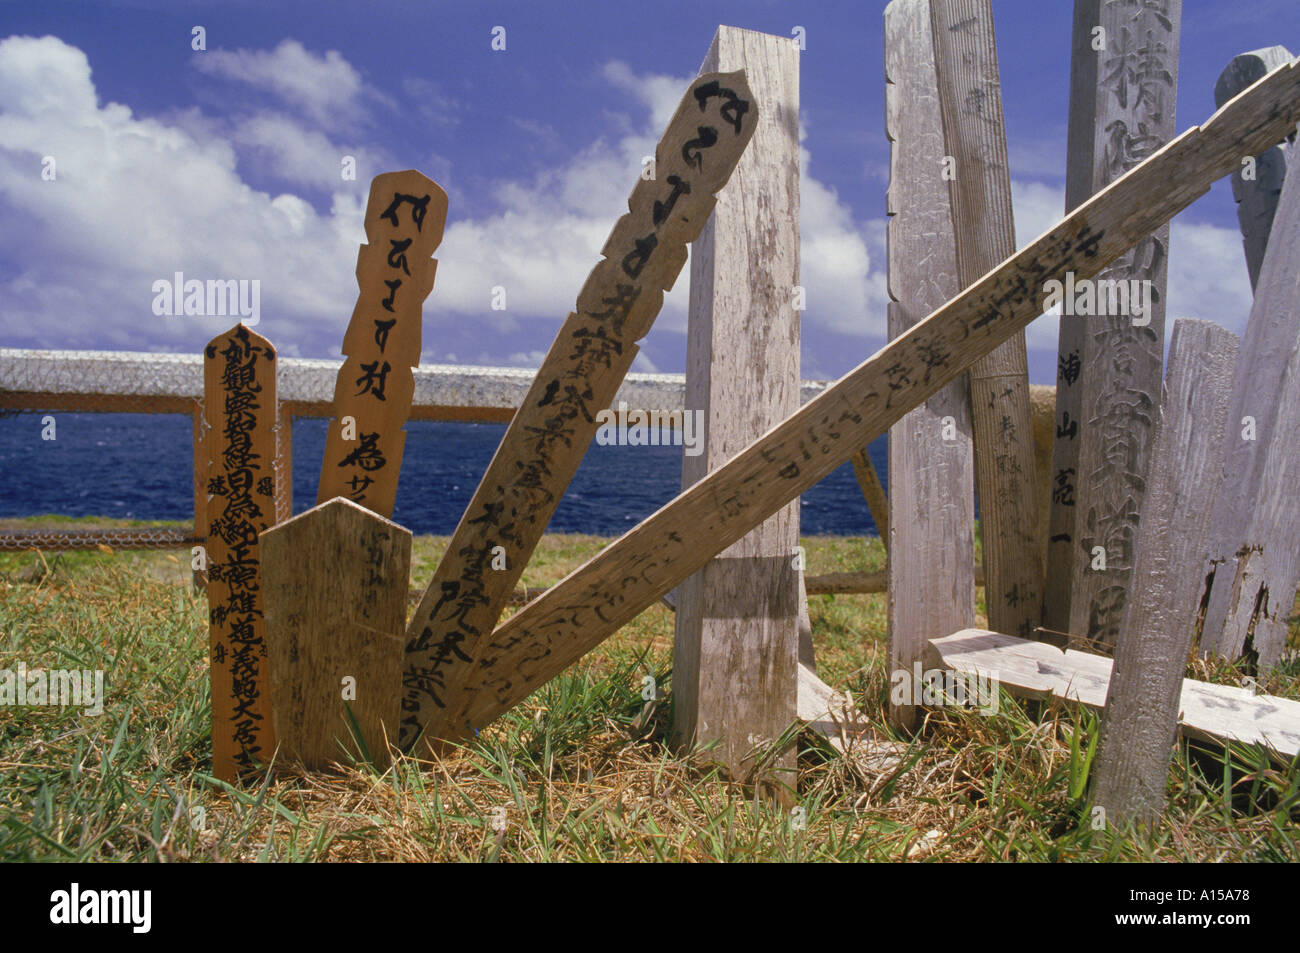 Les monuments commémoratifs de guerre japonais en bois morts de la DEUXIÈME GUERRE MONDIALE sur l'île de Saipan Pacific Islands K Gillham Banque D'Images